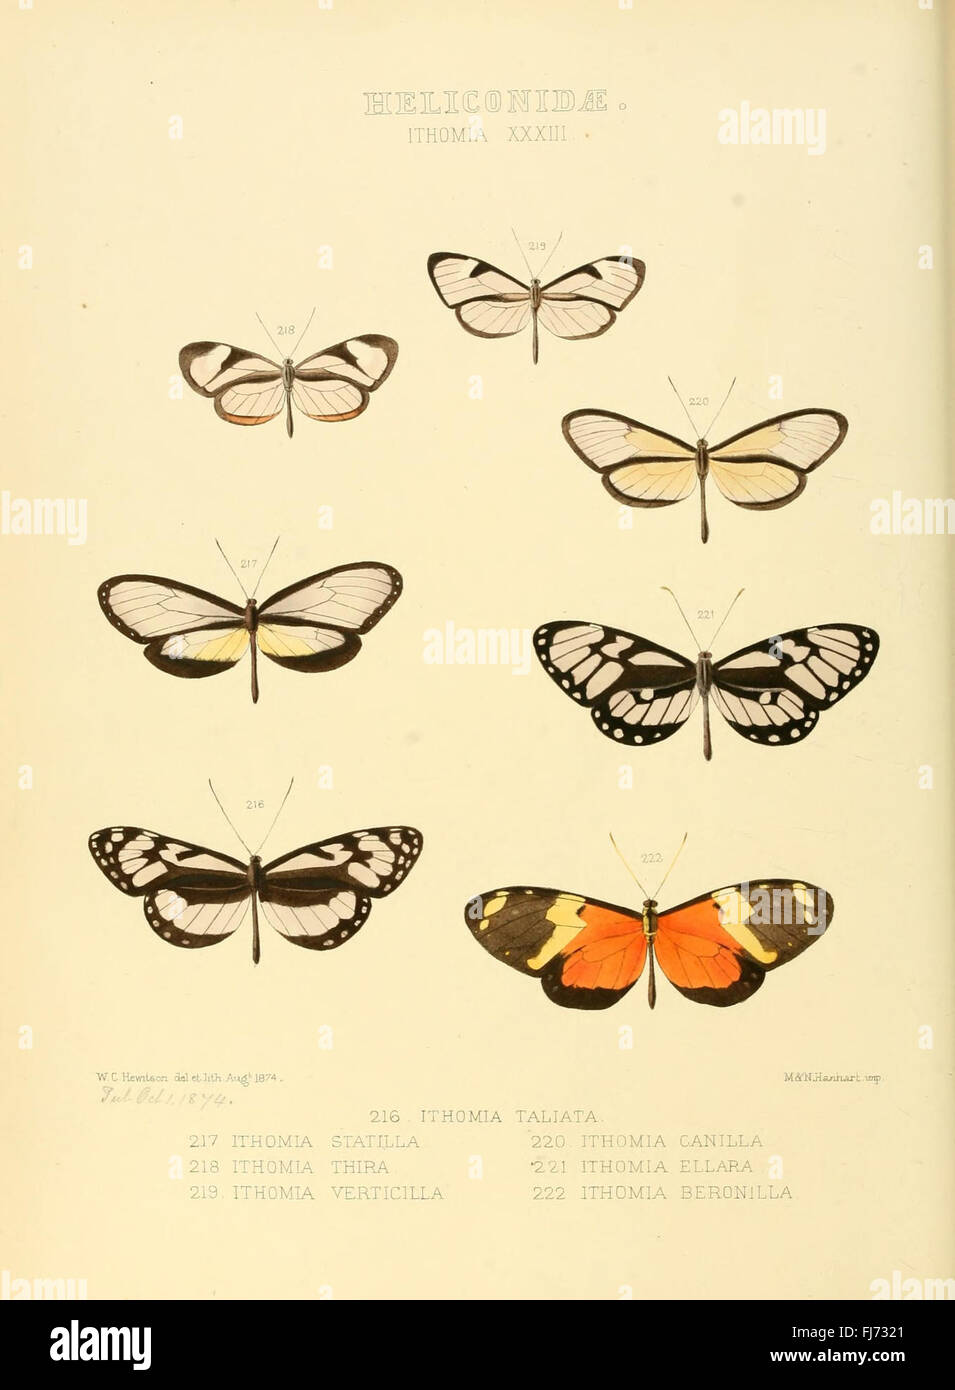 Illustrazioni di nuove specie di farfalle esotiche (Heliconidae- Ithomia XXXIII) Foto Stock